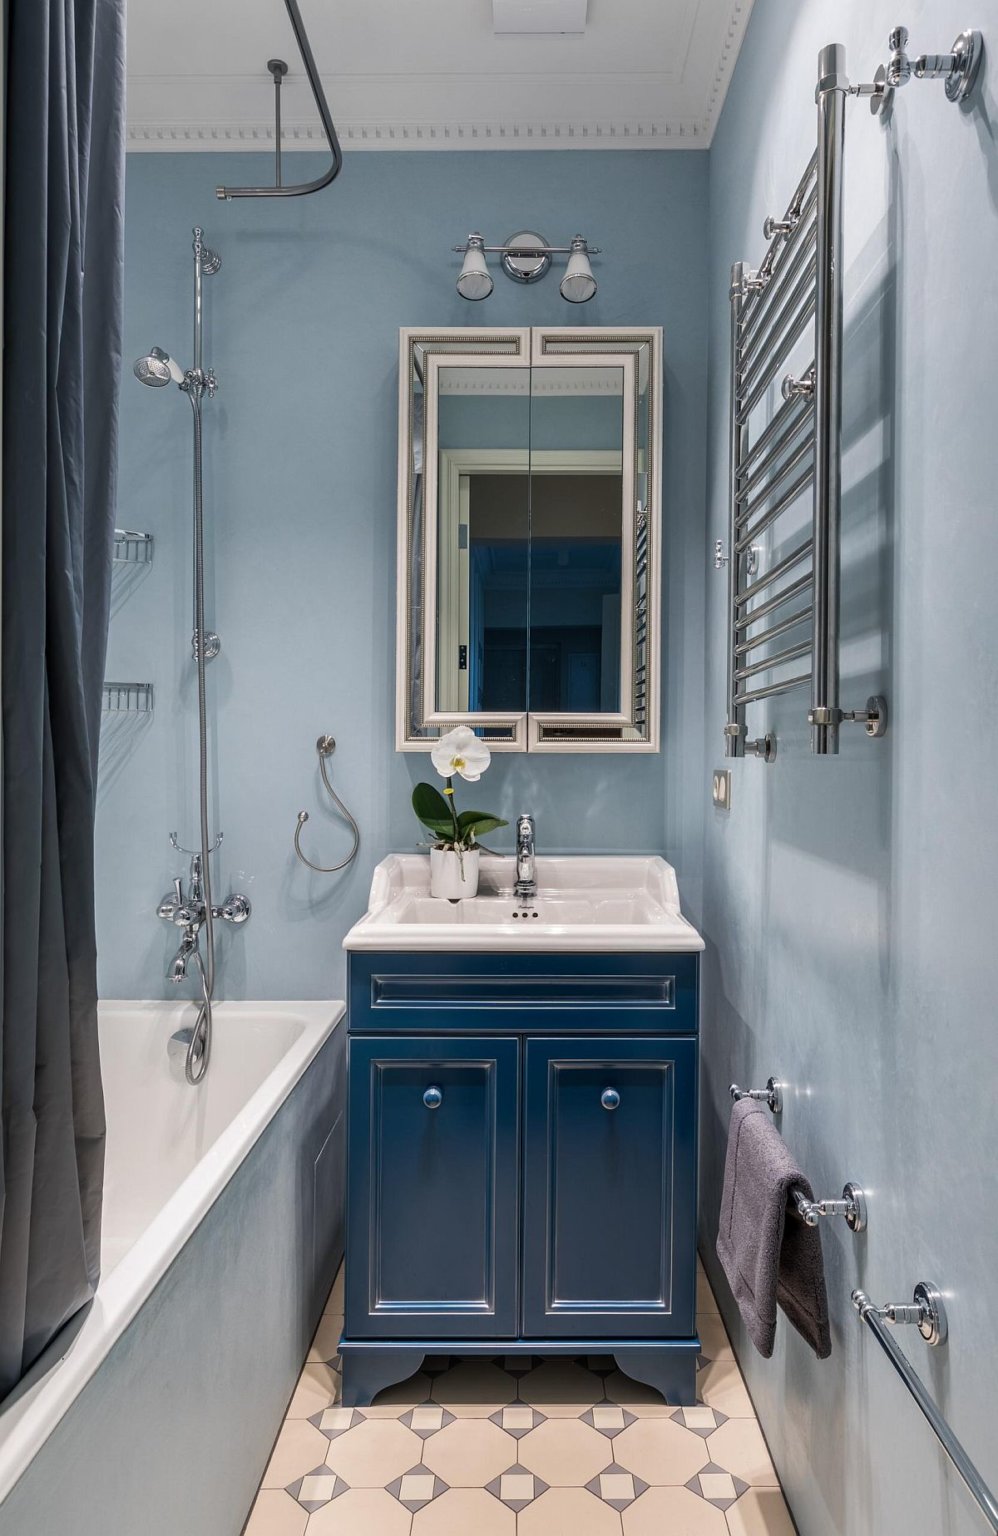 hình ảnh phòng tắm nhỏ với tường và rèm màu xanh nhạt, gạch lát họa tiết hình học